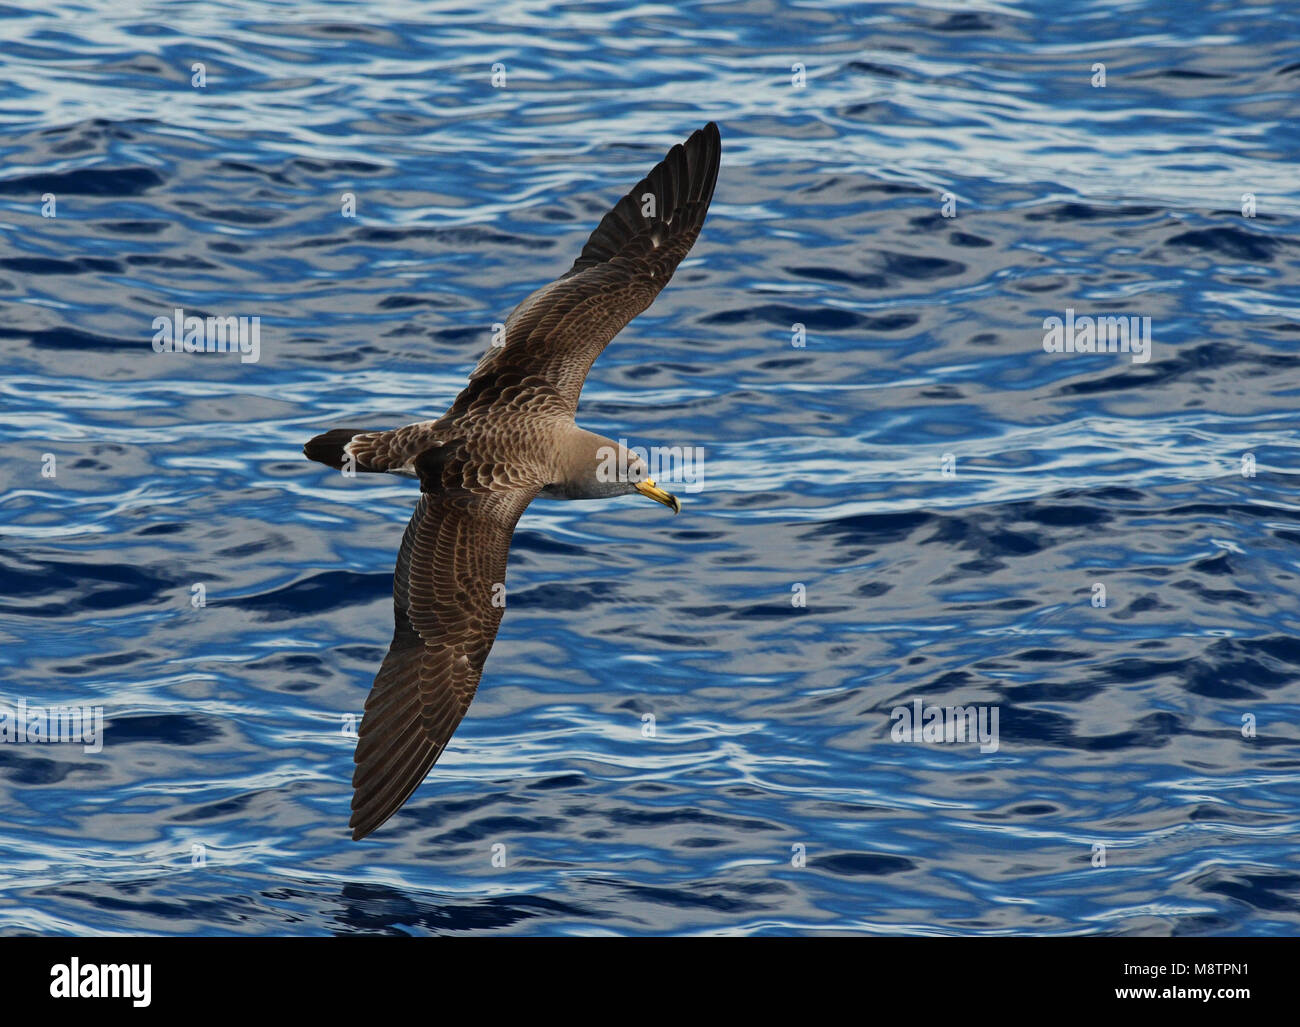 Kuhls Pijlstormvogel, Vliegend boven de Atlantische oceaan; Cory's Shearwater oberhalb der Altlantic Ozean fliegen Stockfoto